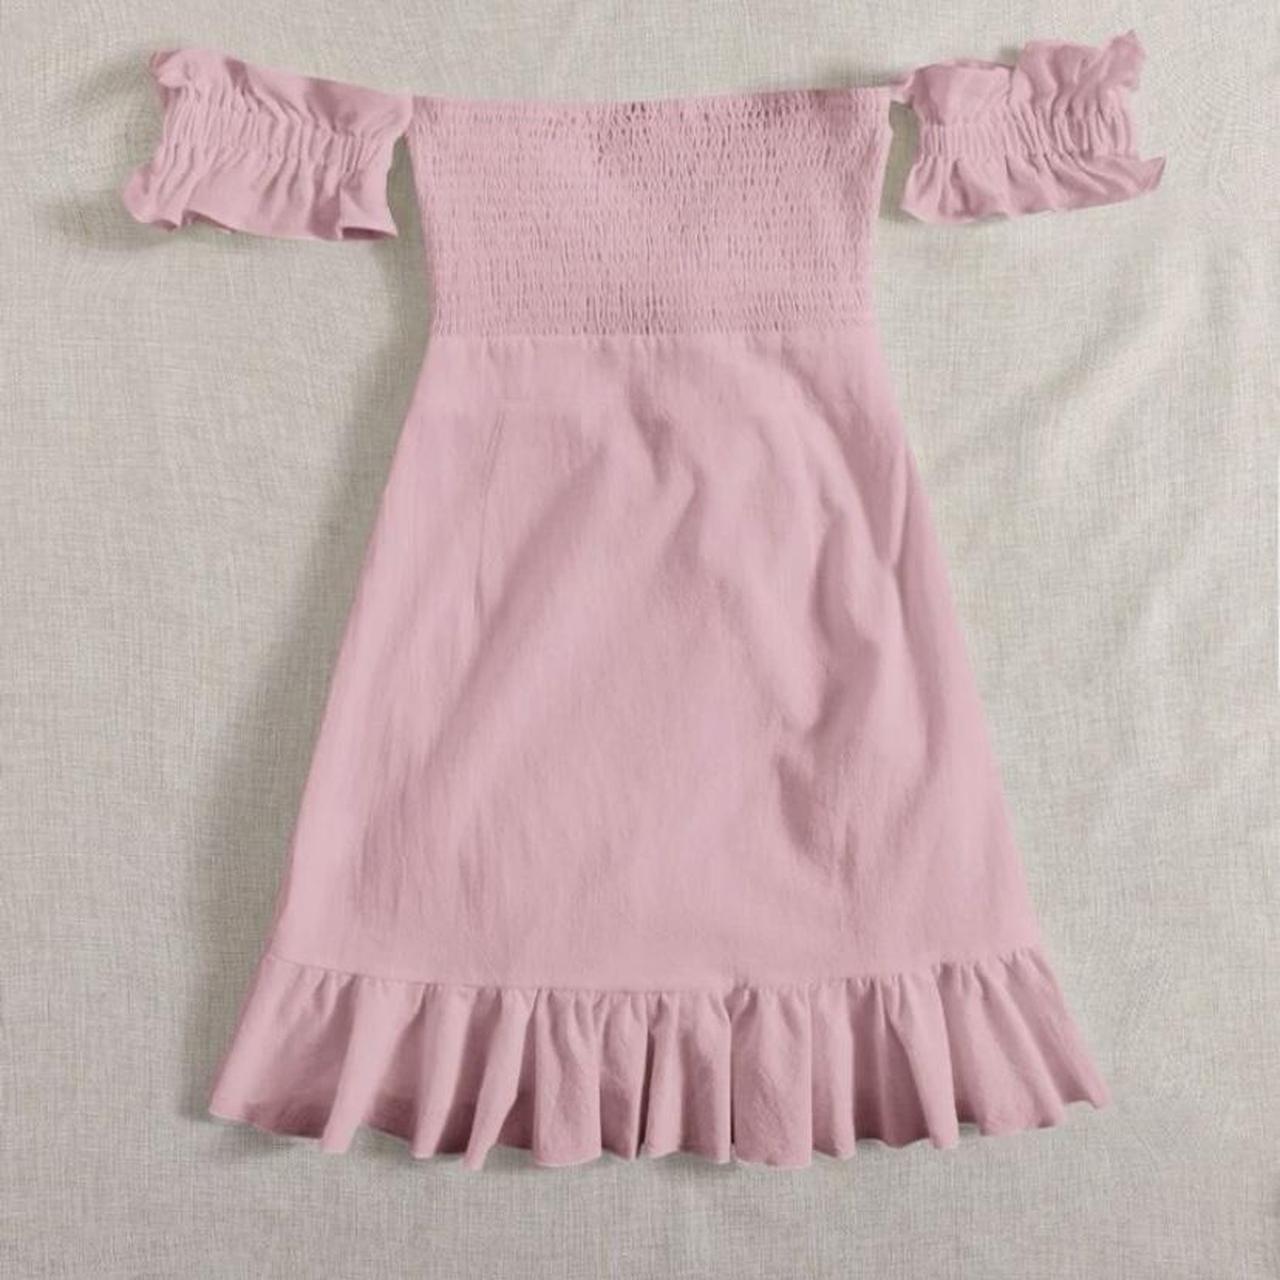 Shein pink bow cute dress, never worn - Depop